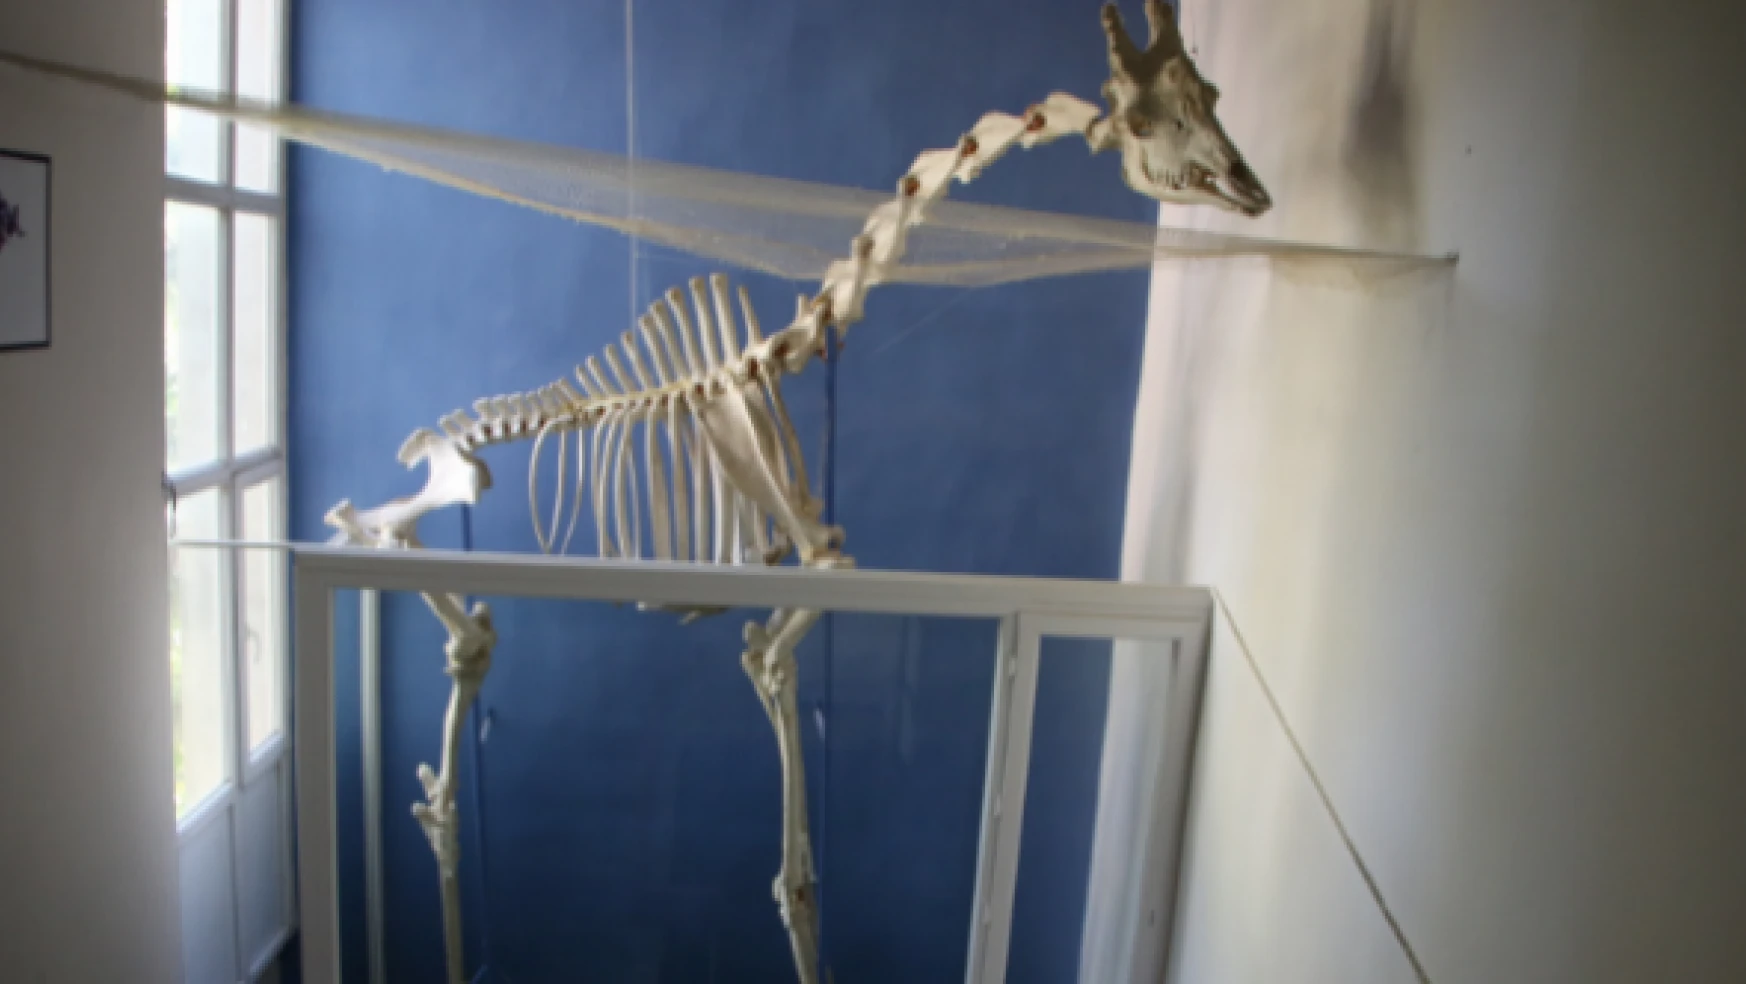 Fırat Üniversitesi Anatomi Müzesi meraklıların gözdesi